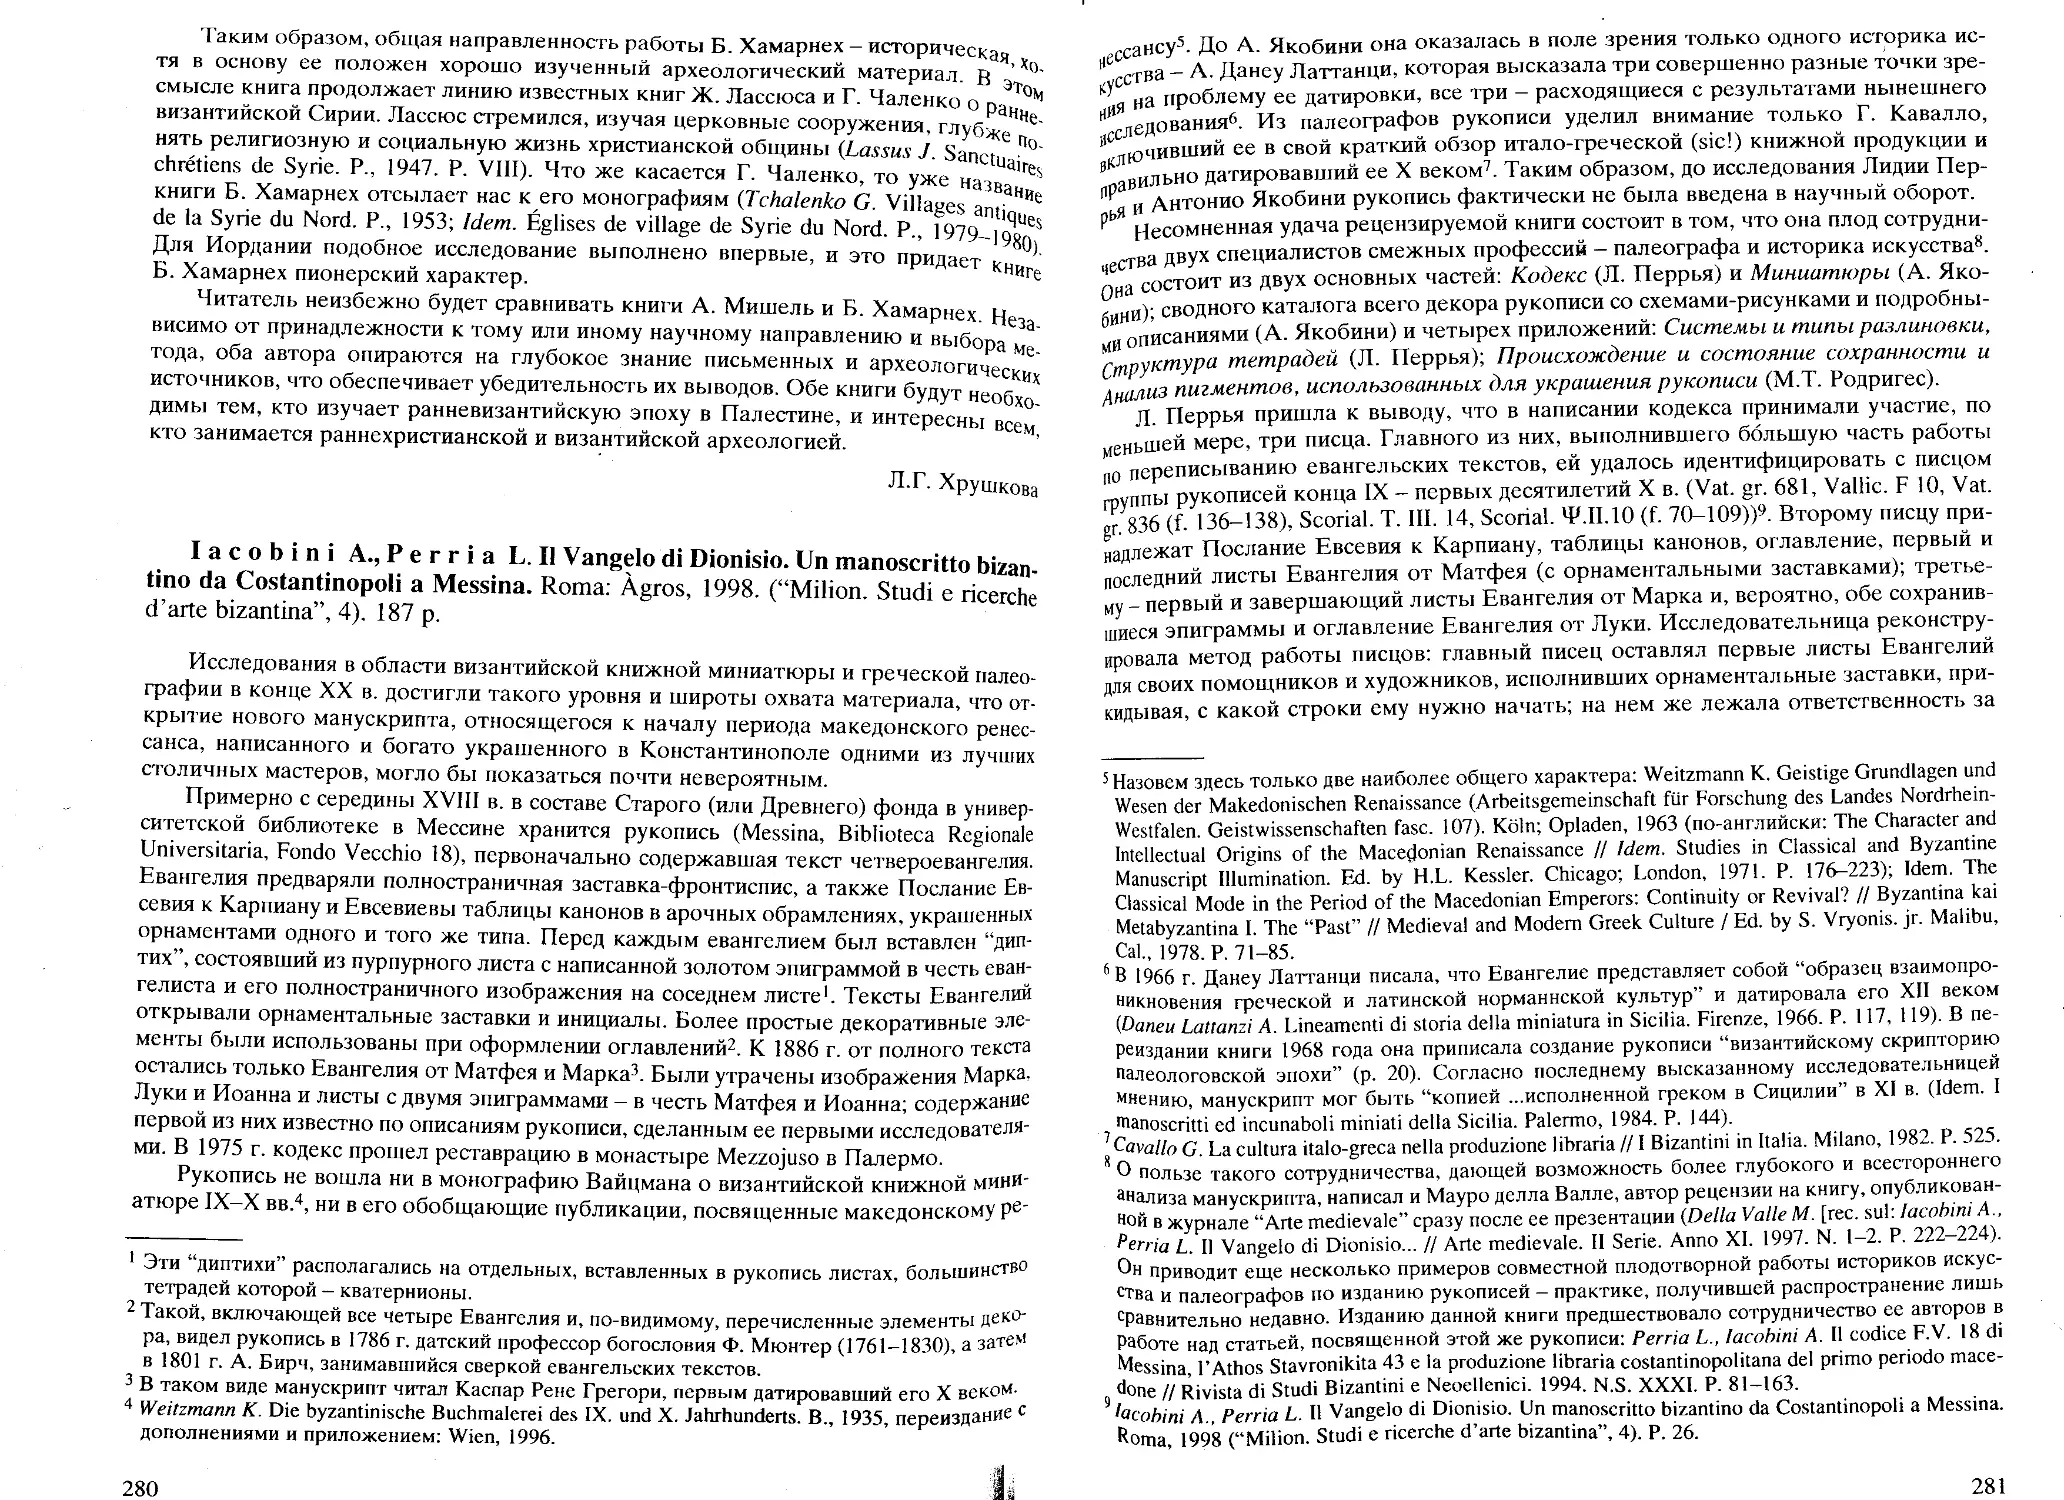 ﻿Iacobini A., Perria L. Il Vangelo di Dionisio: Un manoscritto bizantino da Costantinopoli a Messina øИ. А. Орецкая